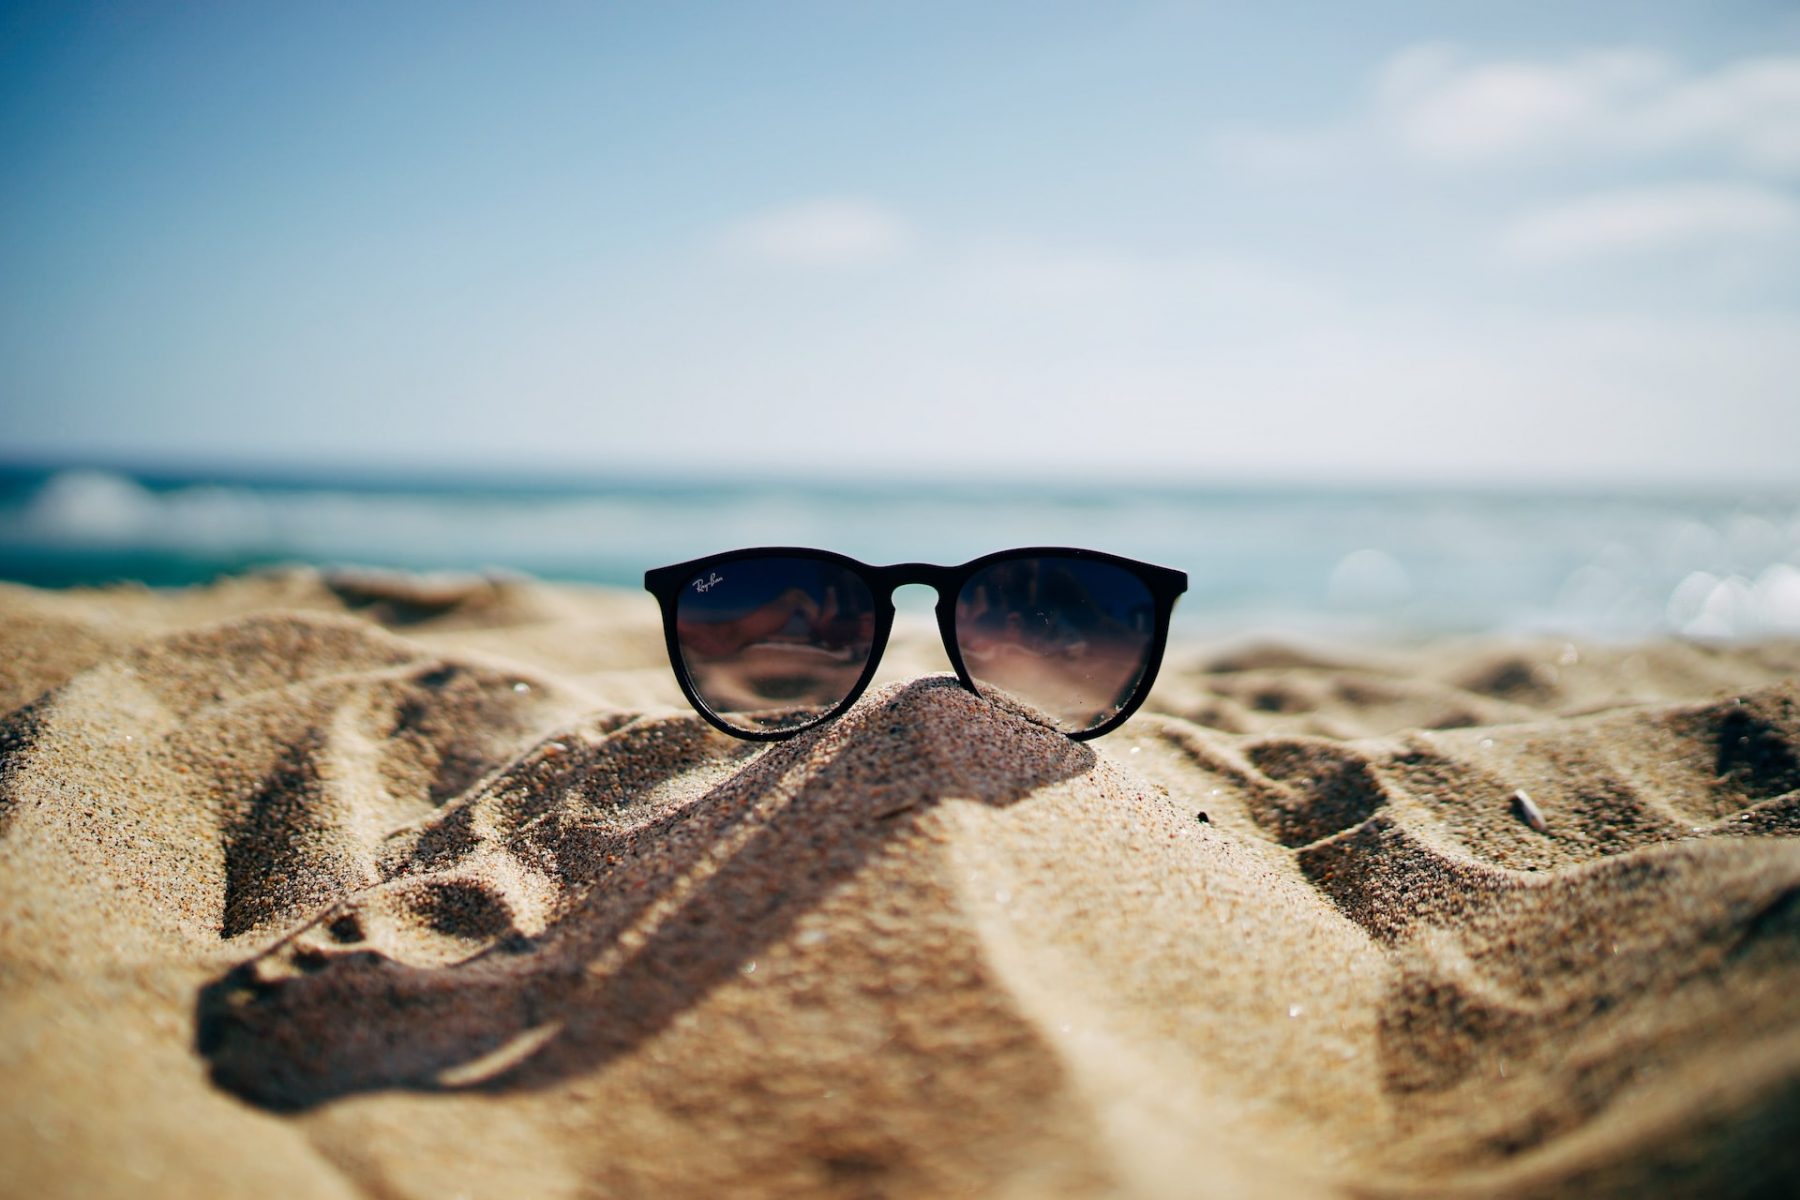 Σχήμα γυαλιών: Πώς να βρείτε τα καλύτερα γυαλιά ηλίου για το σχήμα του προσώπου σας;